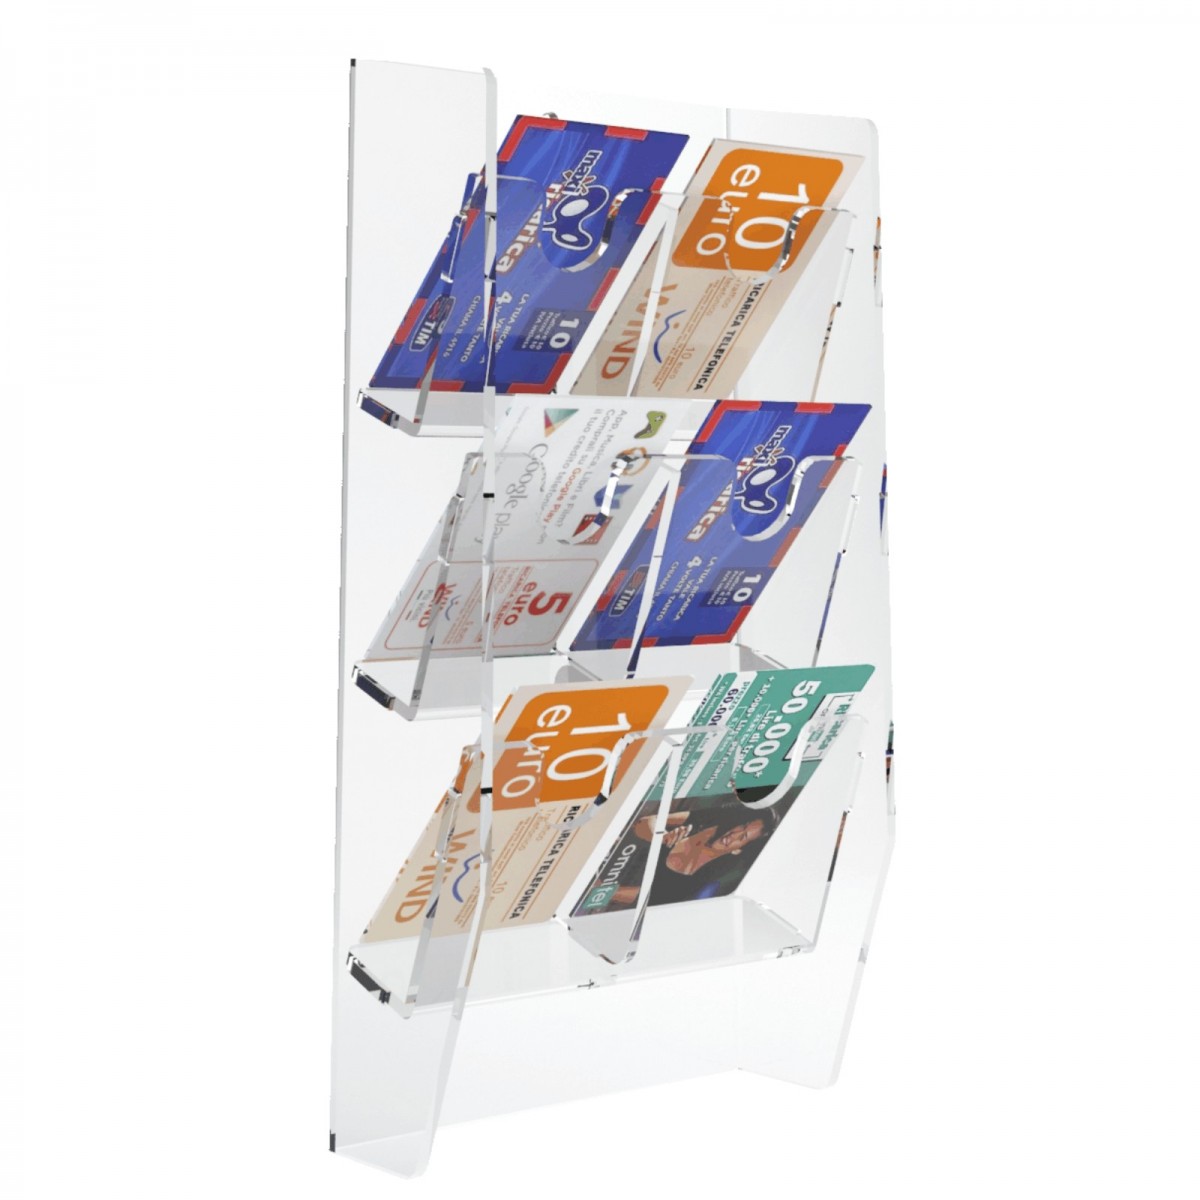 E-286 EPS-E - Espositore schede telefoniche da parete in plexiglass trasparente con 6 tasche